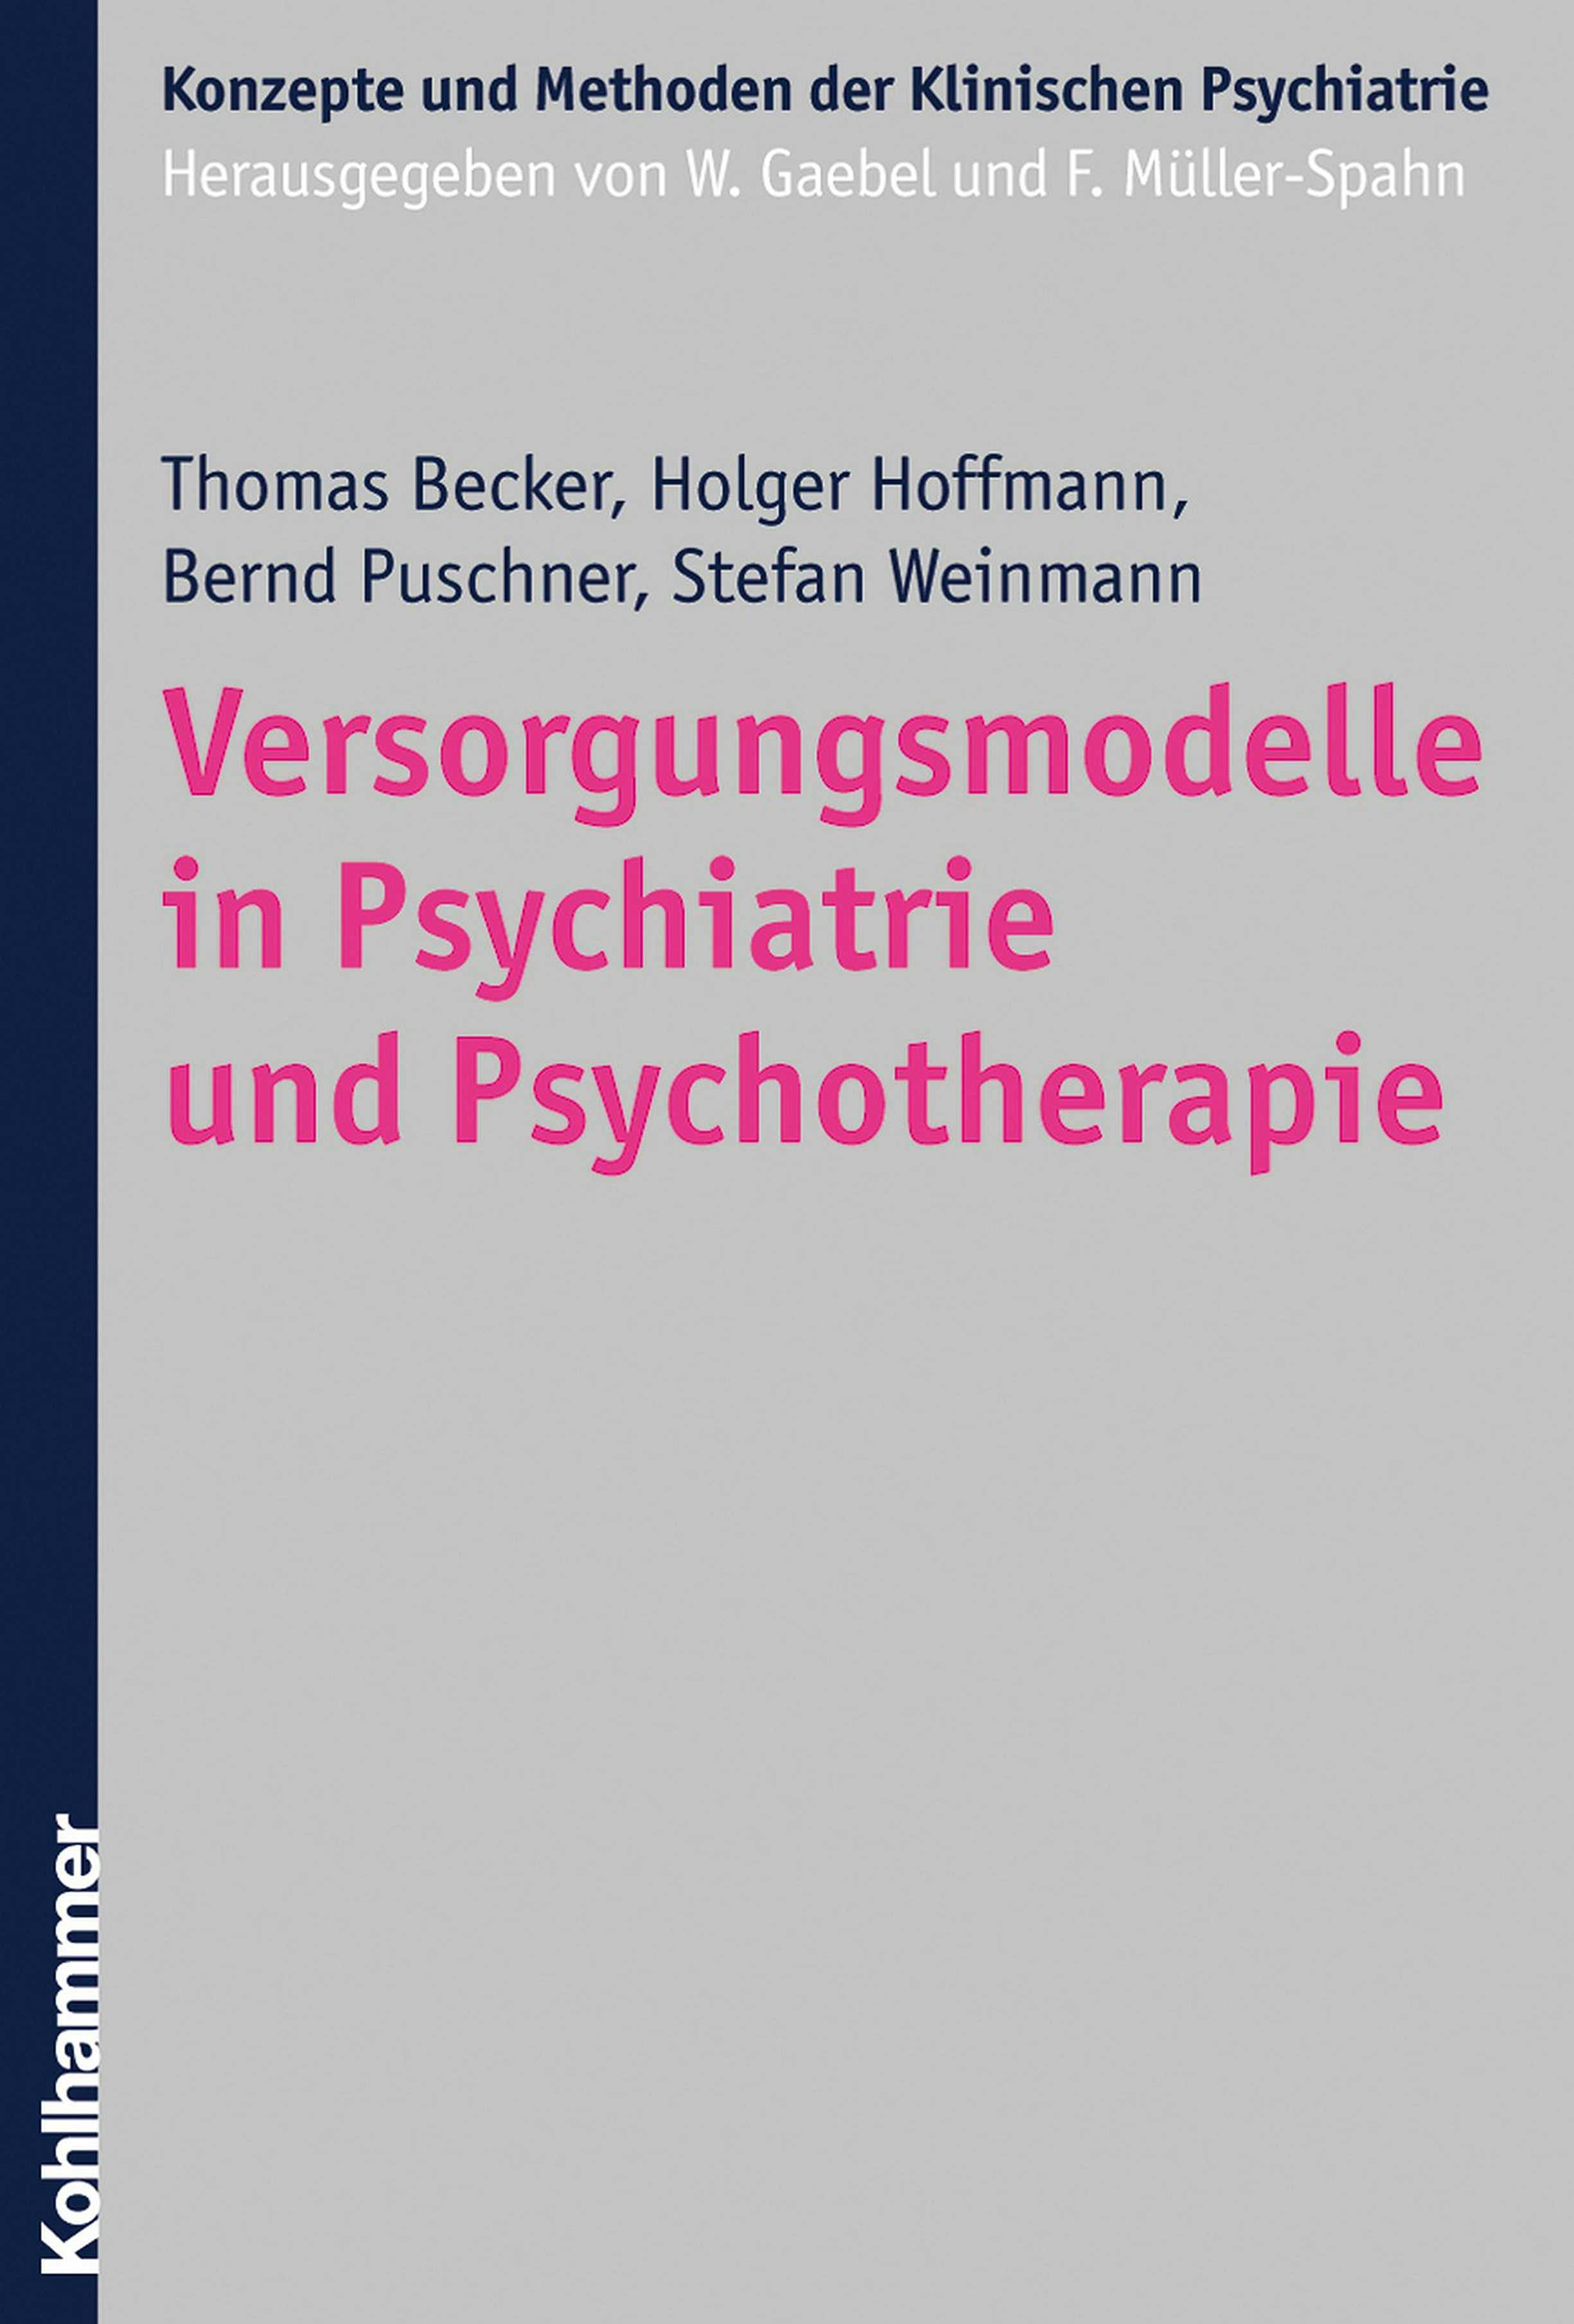 Versorgungsmodelle in Psychiatrie und Psychotherapie - Stefan Weinmann, Bernd Puschner, Thomas Becker, Holger Hoffmann